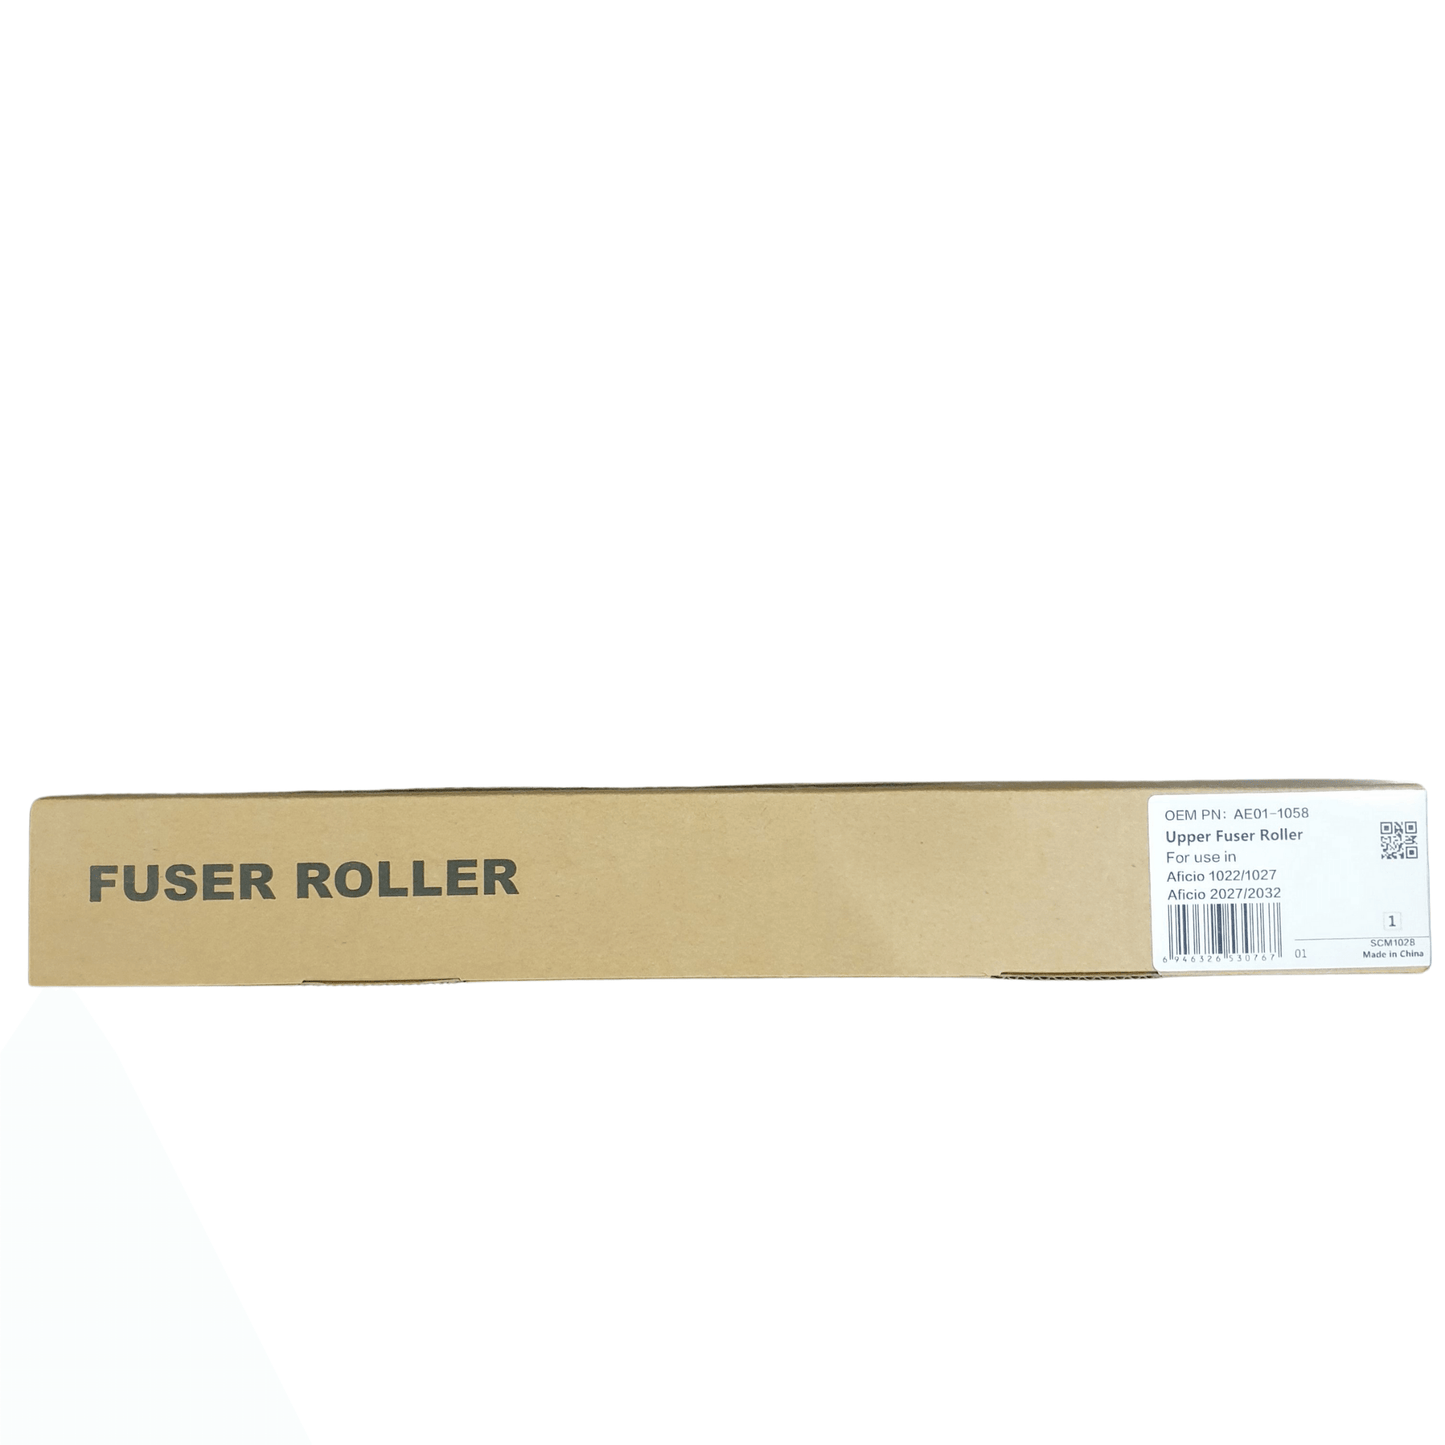 Upper Fuser Roller Ricoh Aficio 1022 CET - 𝐏𝐑𝐄𝐌𝐈𝐄𝐑 𝐓𝐑𝐀𝐃𝐄𝐑𝐒